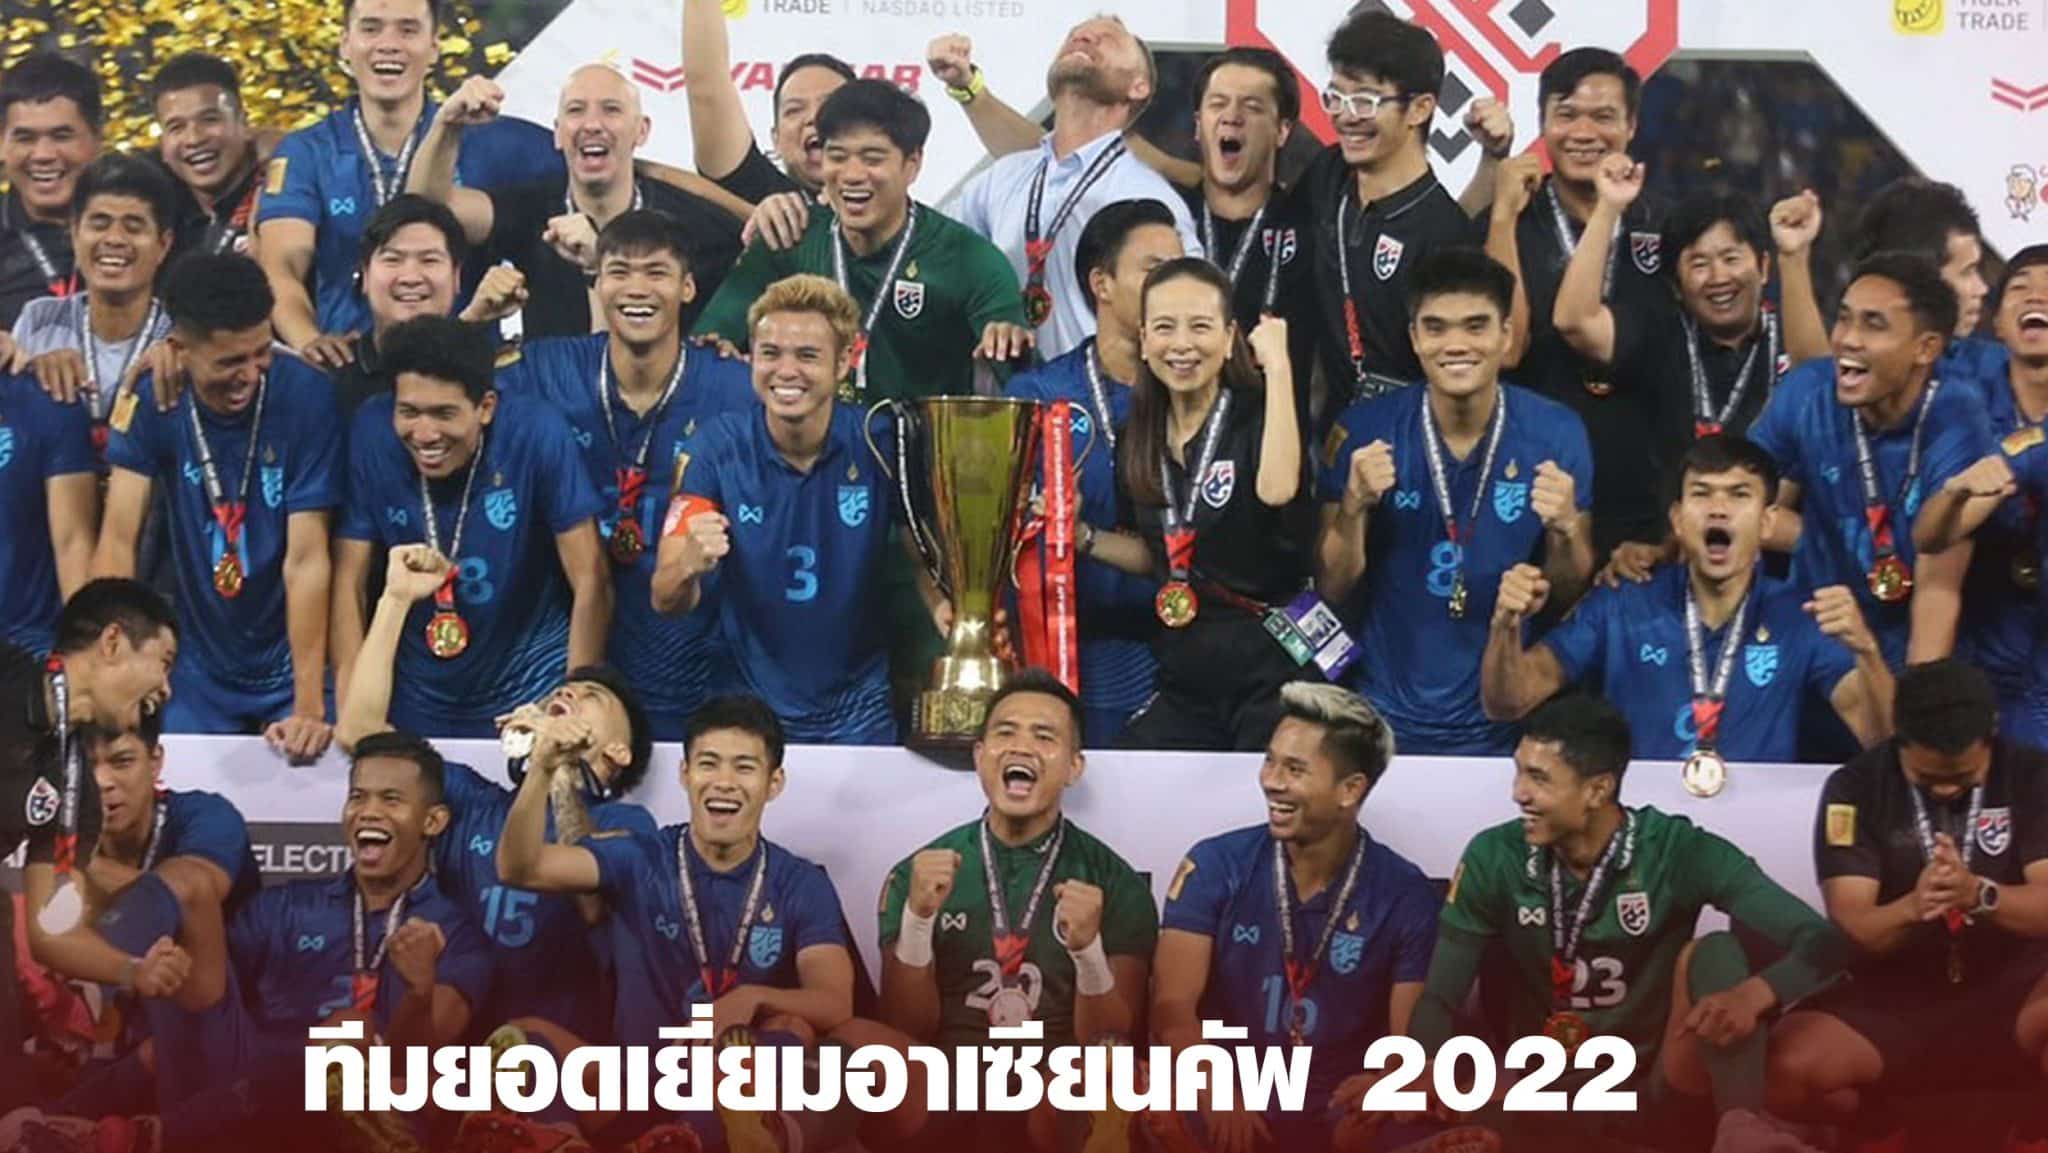 ทีมยอดเยี่ยมอาเซียนคัพ 2022